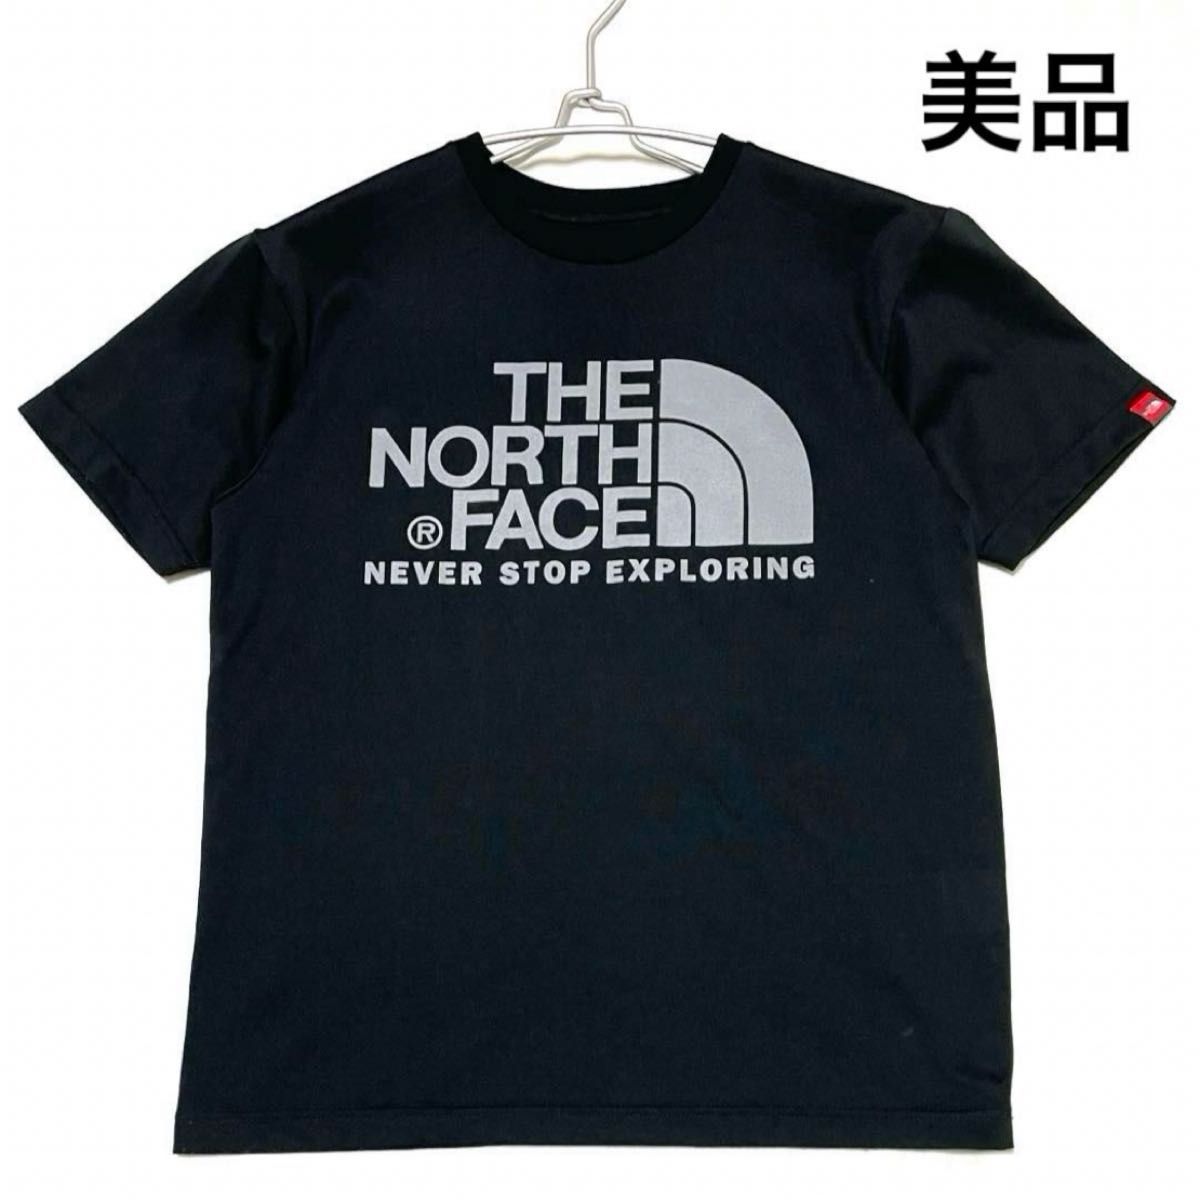 ノースフェイスtシャツ 美品 カラードームティー 黒 S NT31552 THE NORTH FACE 半袖Tシャツ ブラック